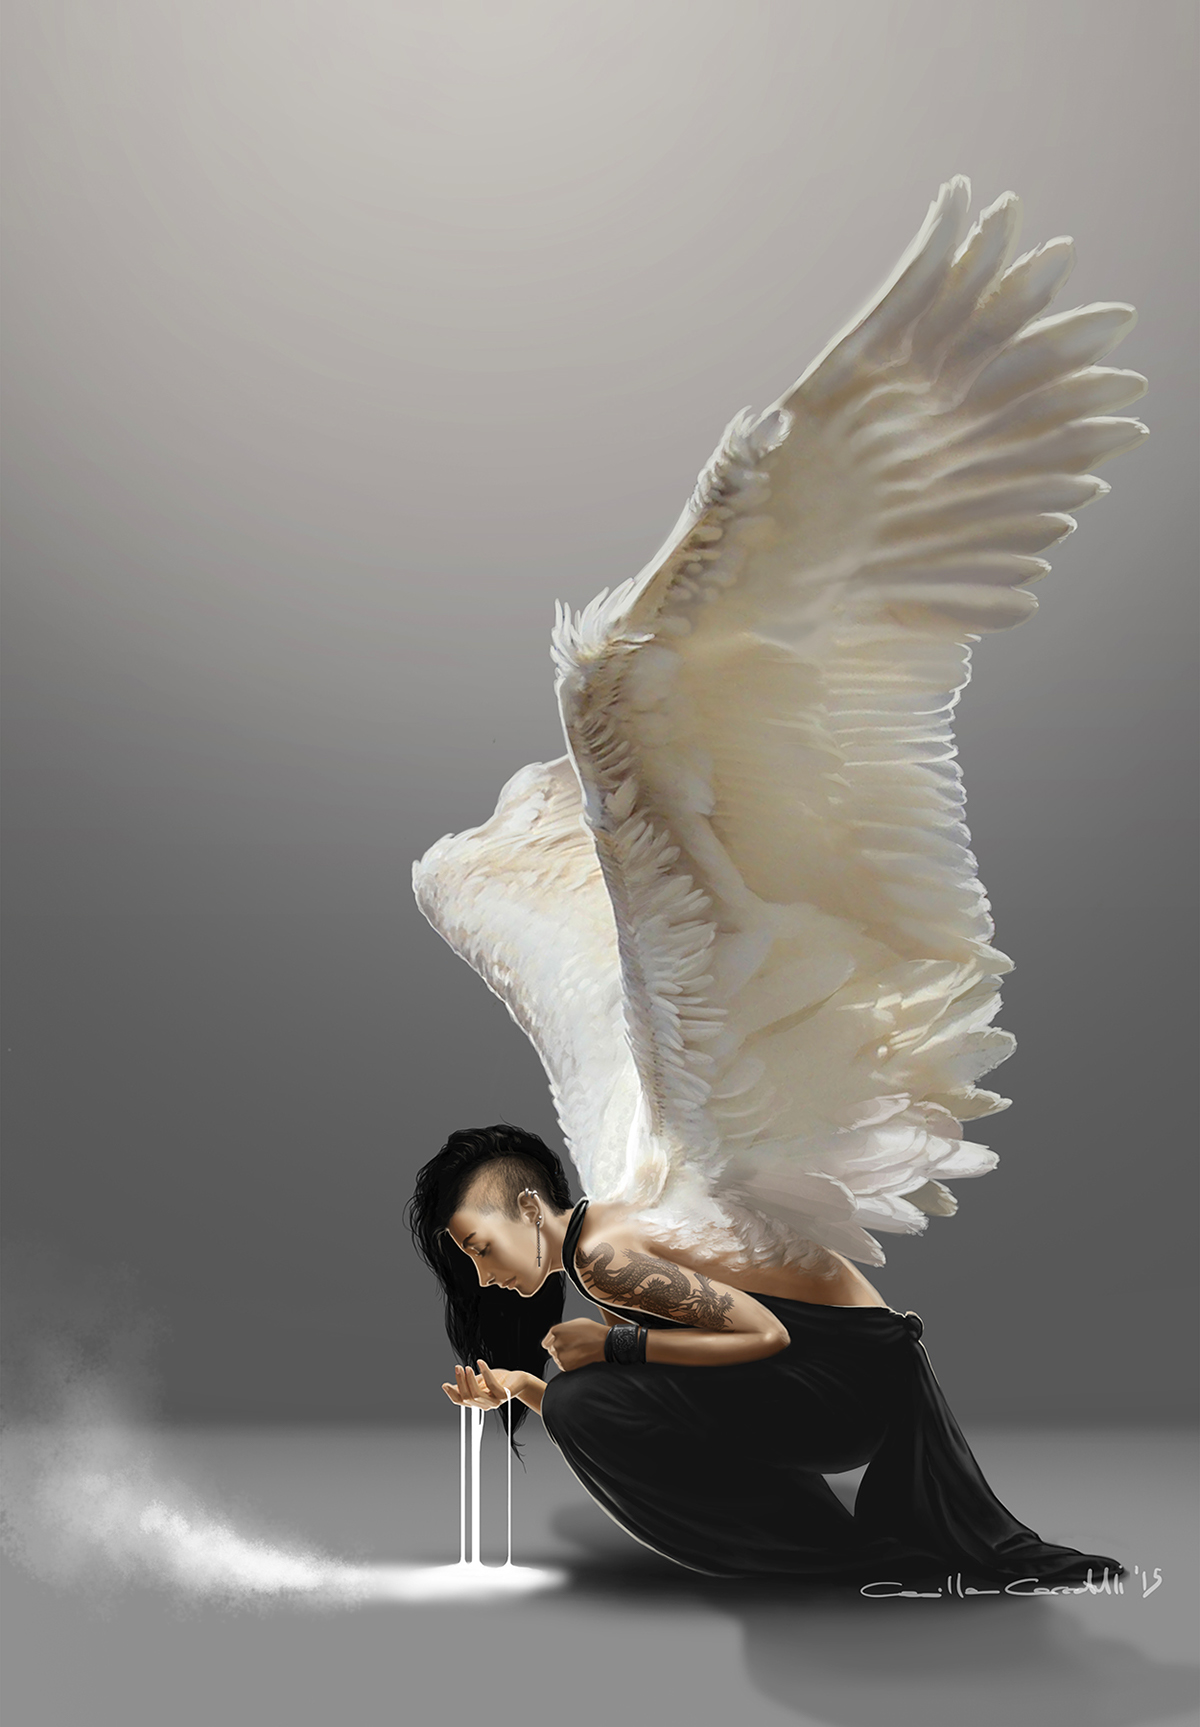 darkangel dark angel digitalpainting digitalart wings Whitewings DIGITALDRAWING fantasycreature fantasyart fantasyillustration DigitalIllustration digital characterdesign Character